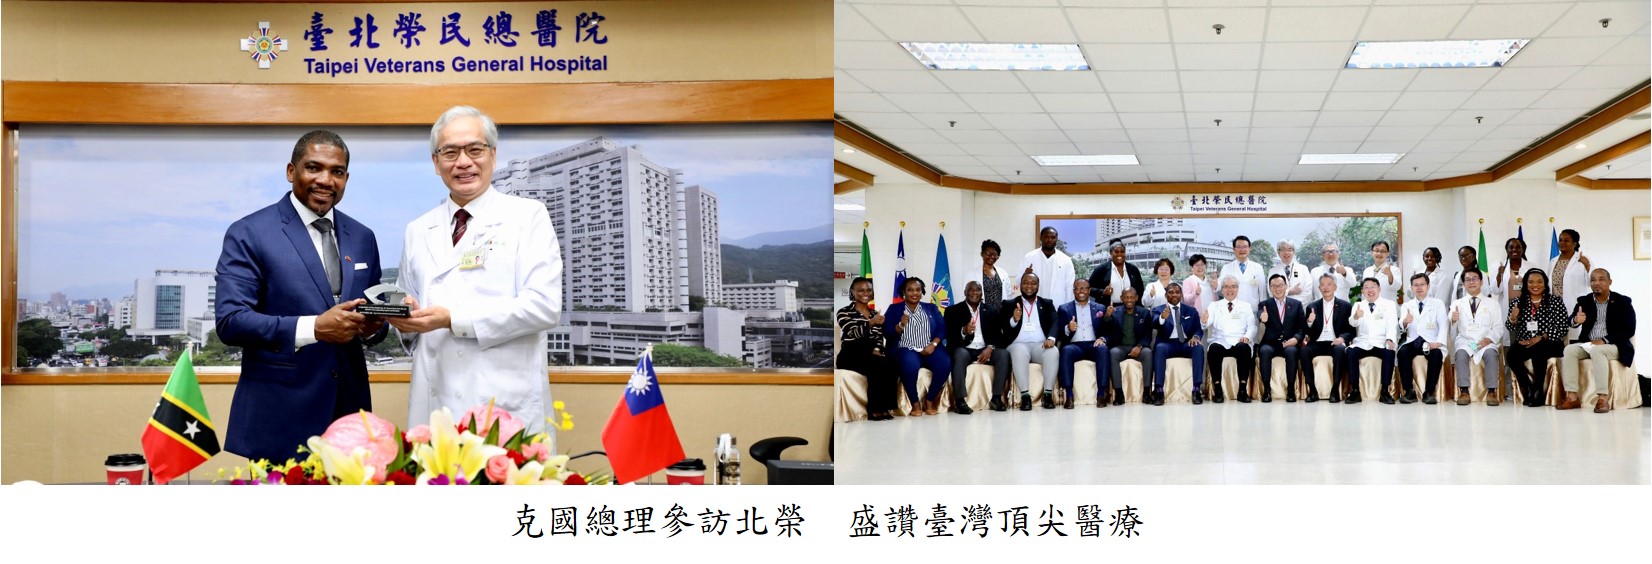 克國總理參訪北榮 盛讚臺灣頂尖醫療圖